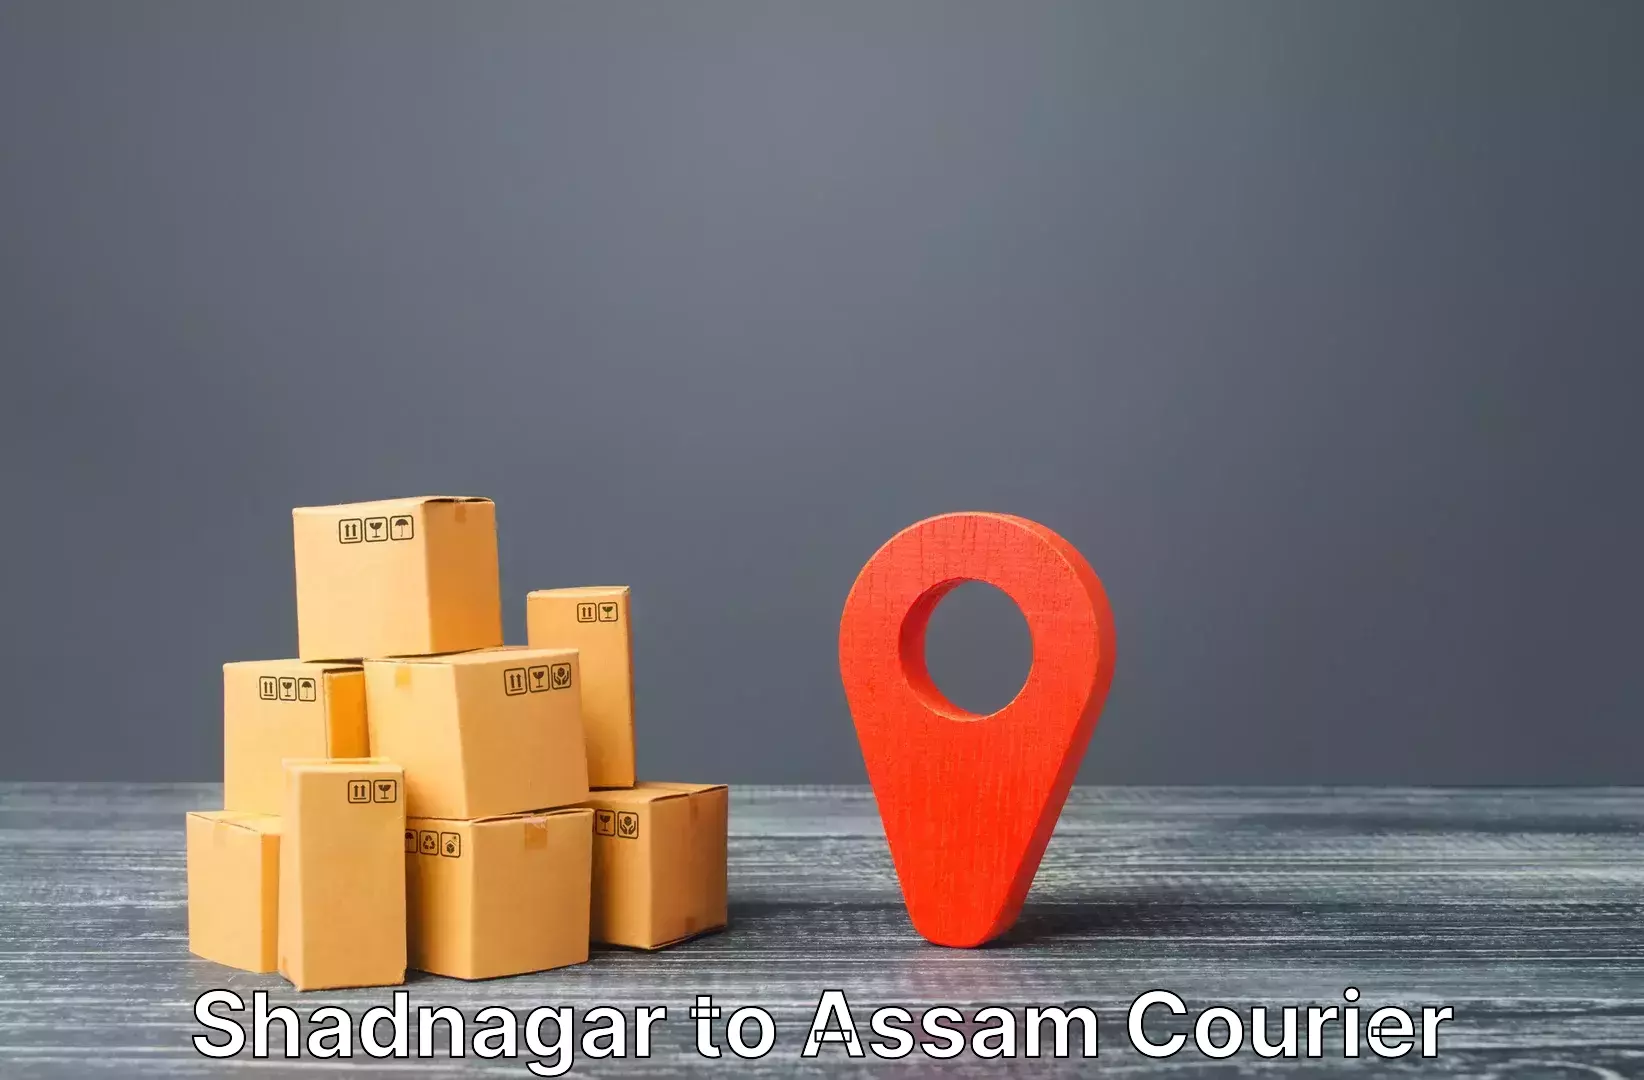 Luggage delivery estimate Shadnagar to Udalguri